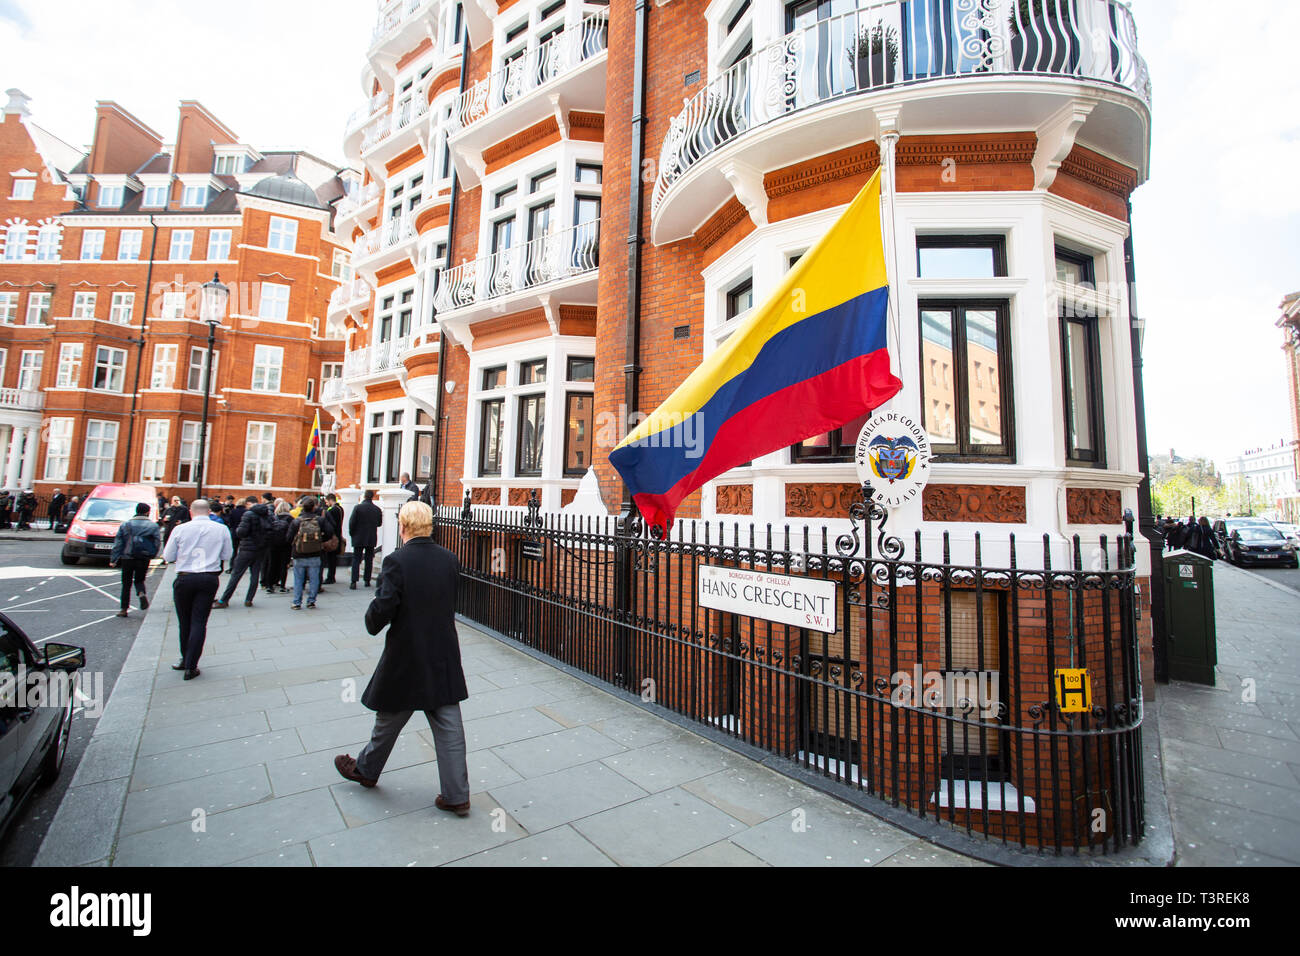 London/England - 11. April 2019: Die ecuadorianische Fahne Wellen außerhalb der ecuadorianischen Botschaft in London. Stockfoto